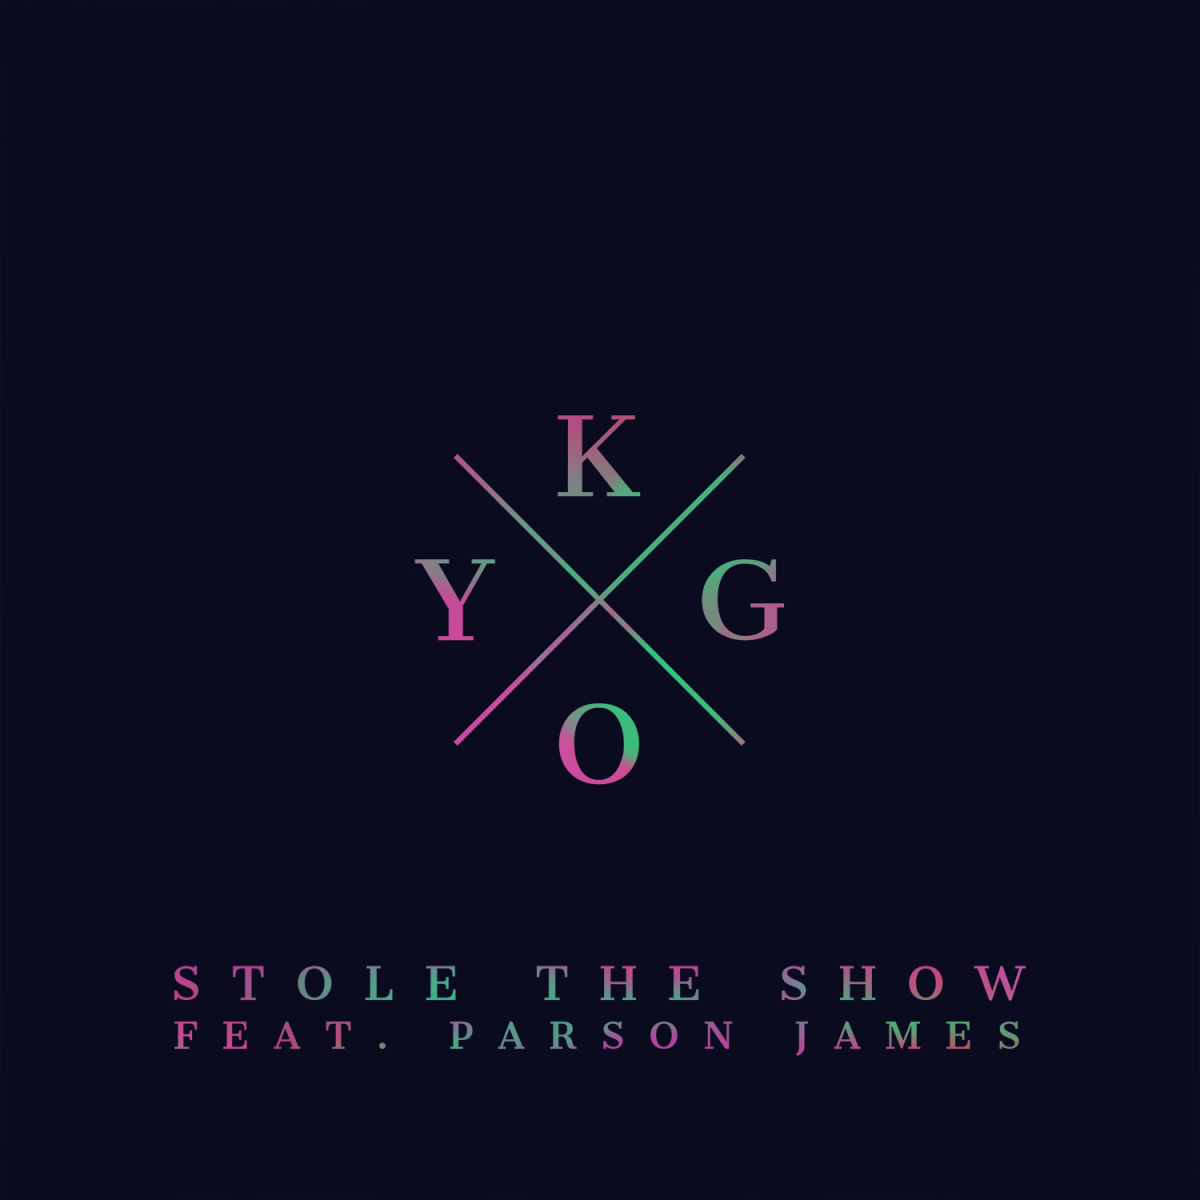 KYGO - Stole The Show